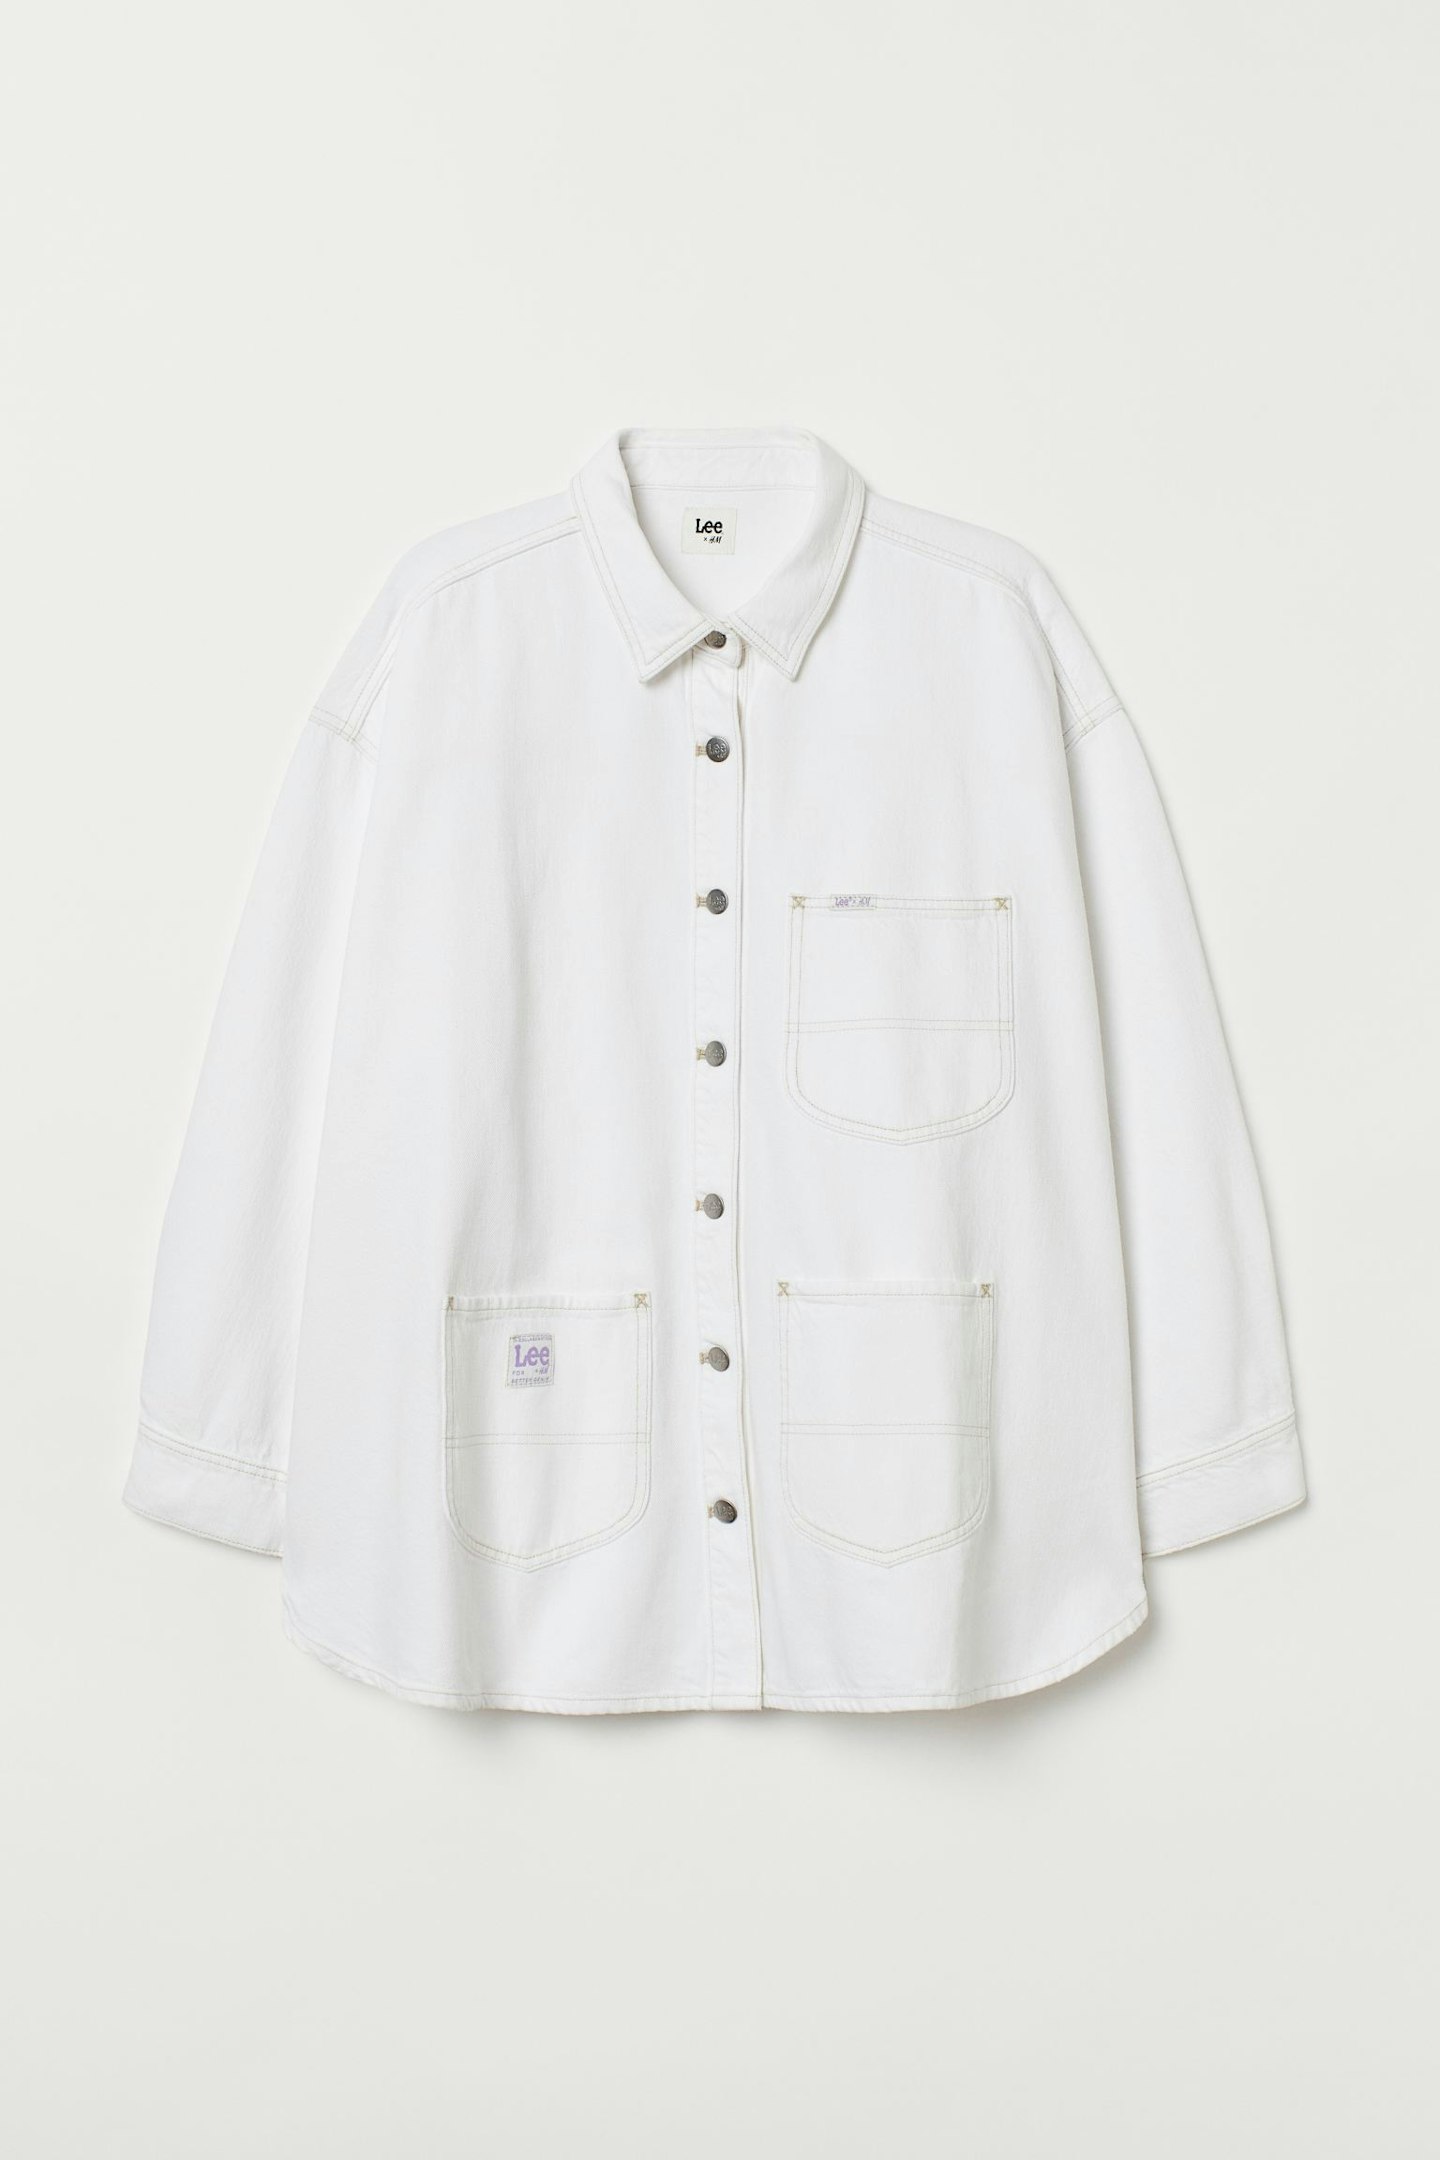 Lee X H&M, H&M+ Denim Shirt Jacket, £39.99